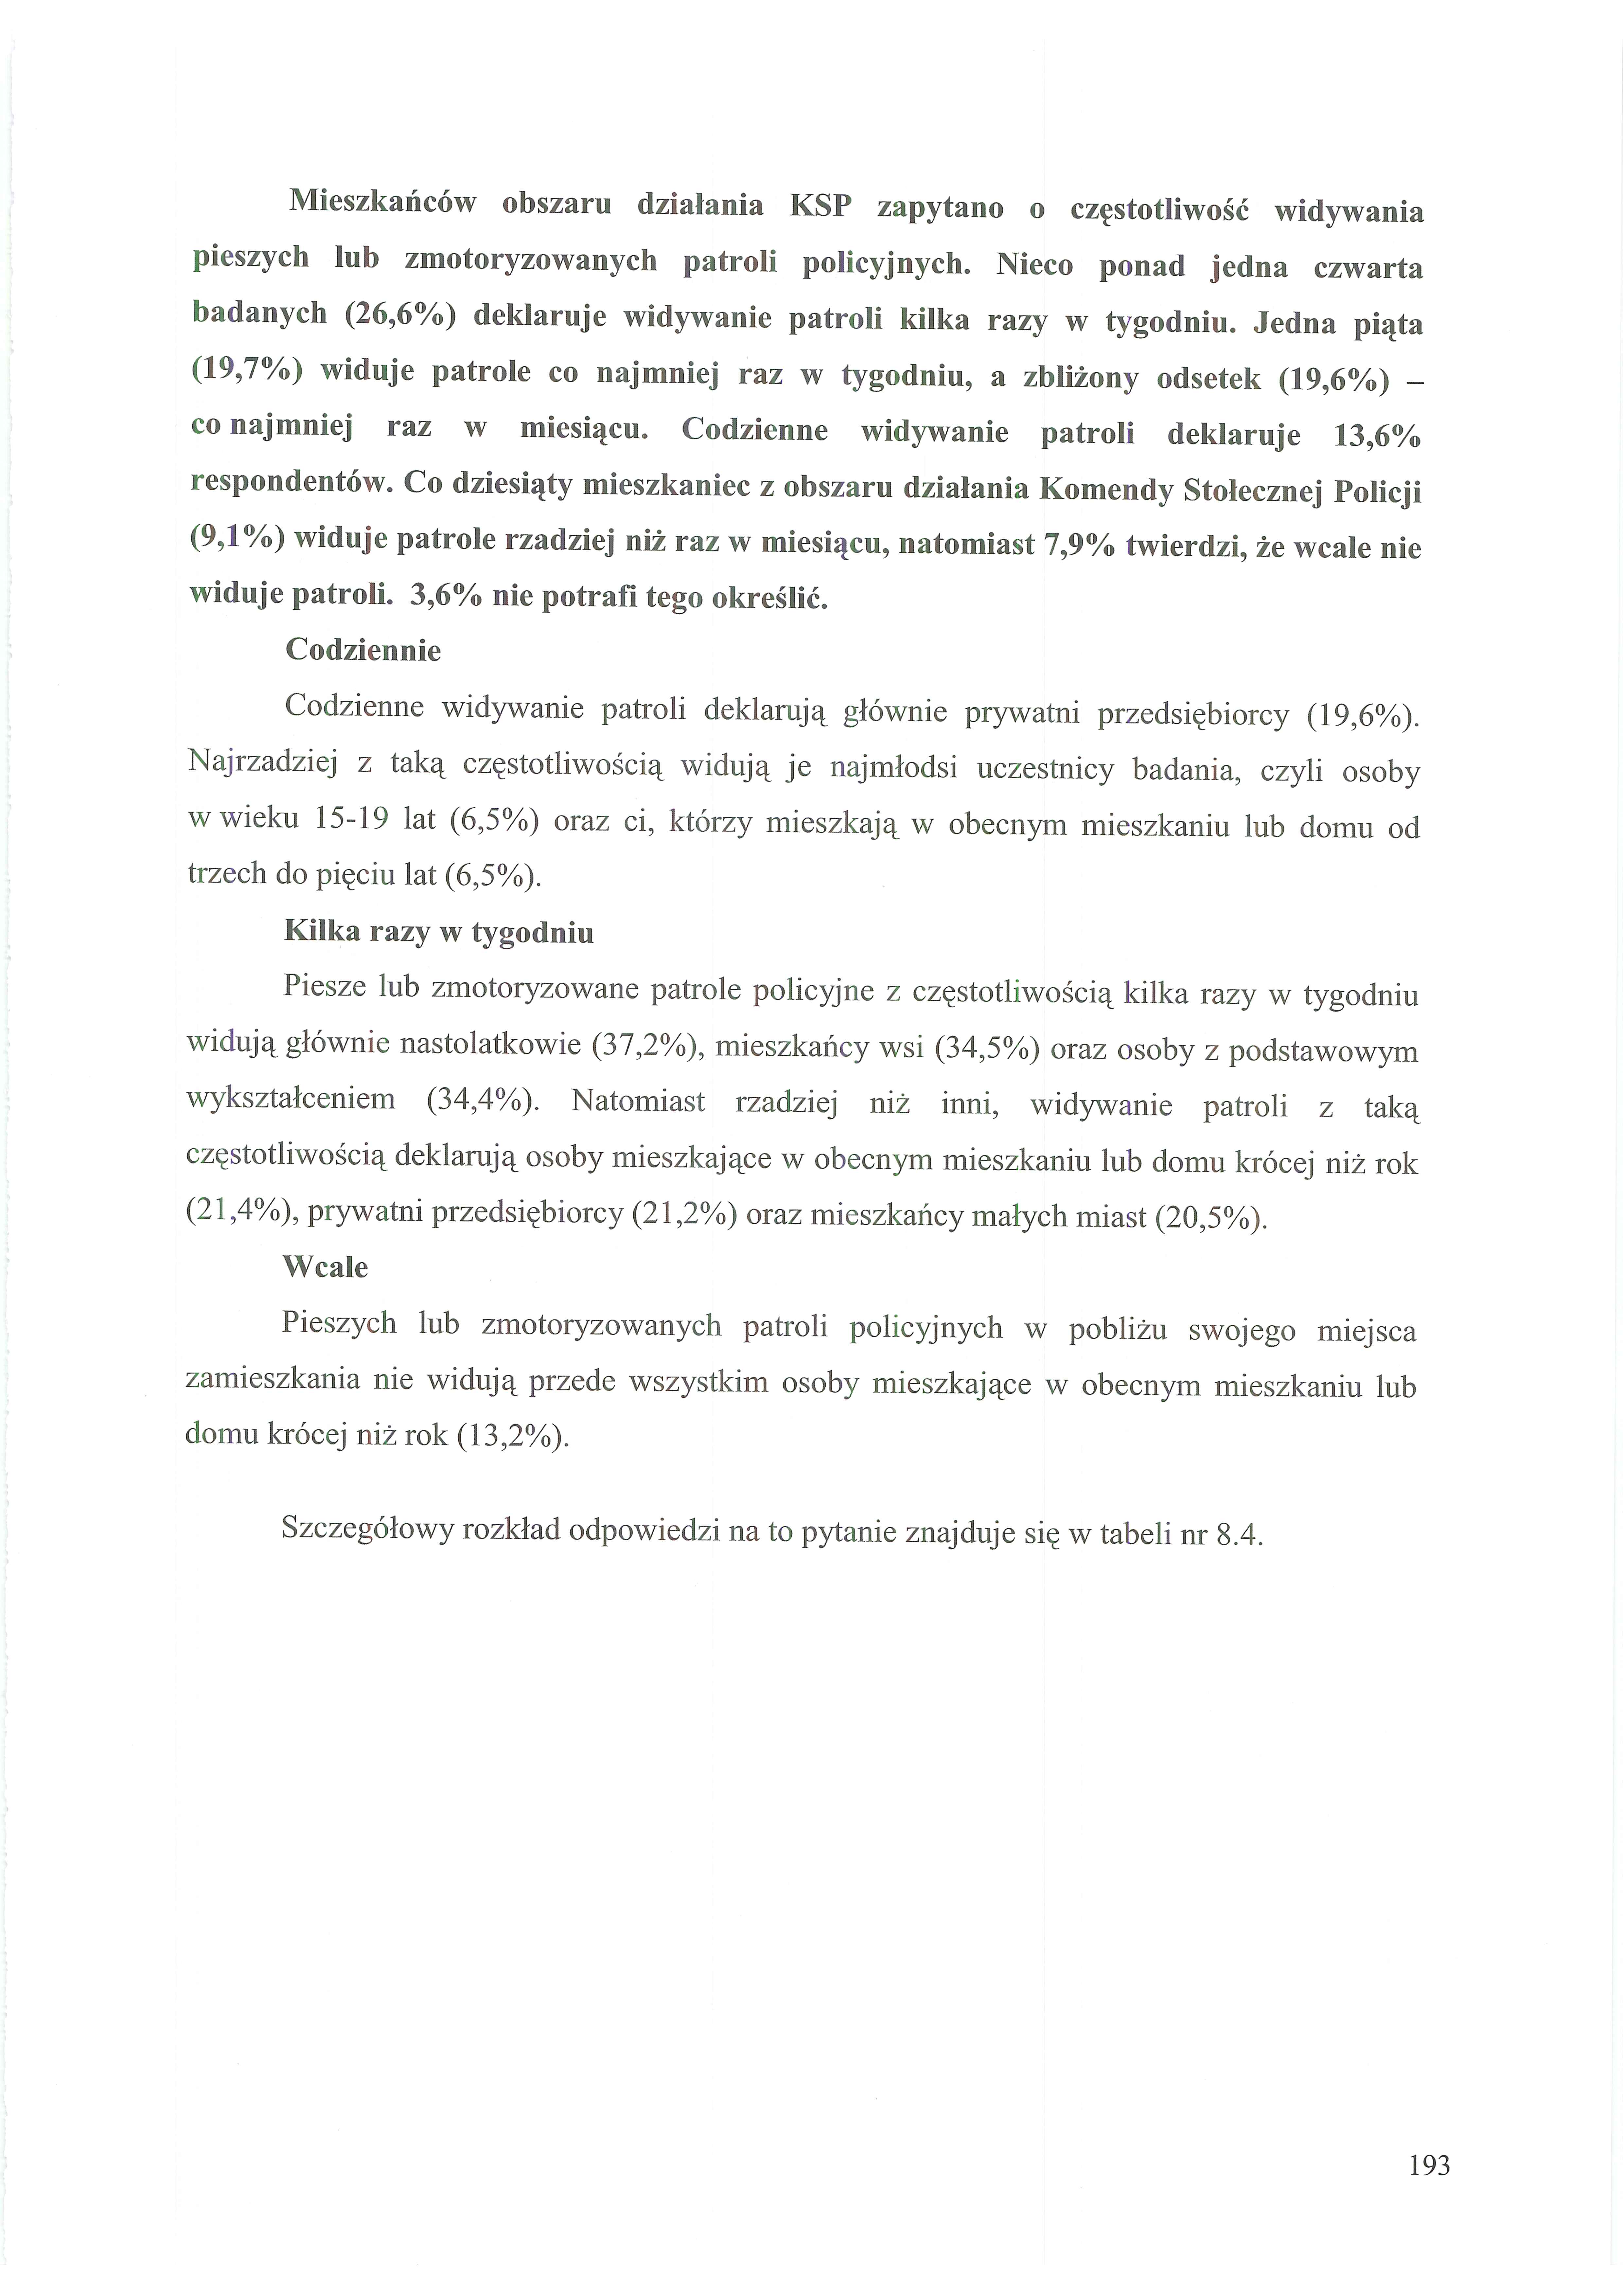 2007 KGP - Polskie badanie przestępczości cz-3 - 20140416053912345_0003.jpg